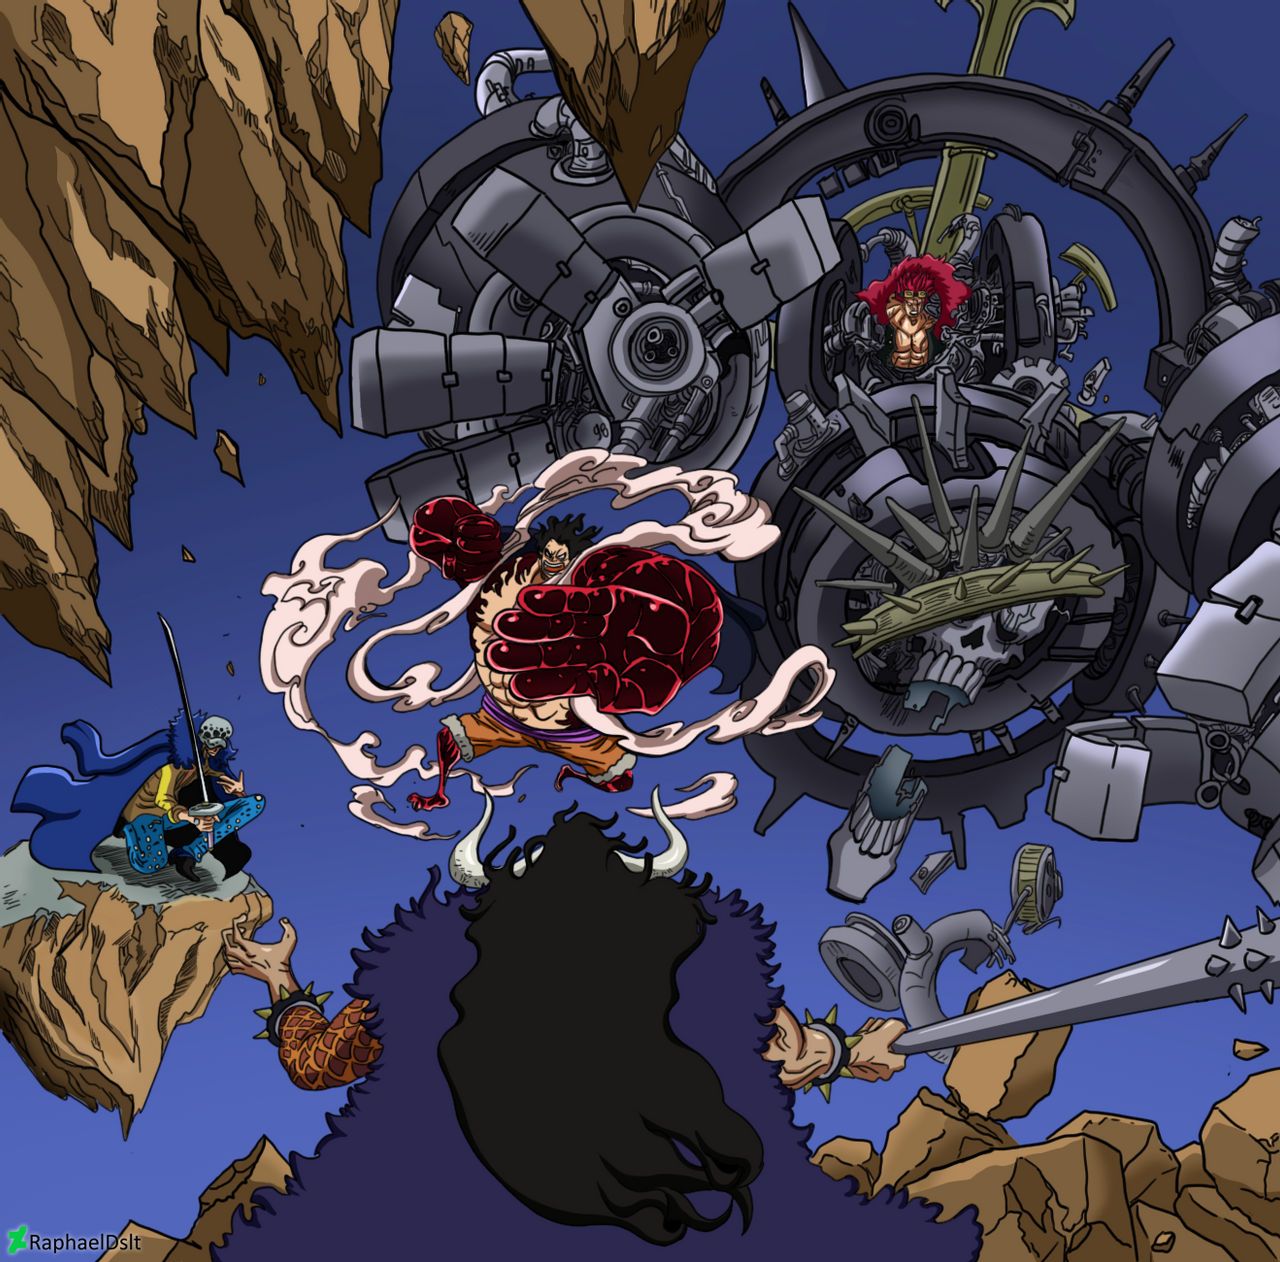 Luffy và Law: Được biết đến là hai nhân vật rất đặc biệt trong series One Piece, Luffy và Law đã tạo nên một cặp đôi lý tưởng cho các fan hâm mộ anime. Xem hình ảnh của hai nhân vật này sẽ giúp bạn khám phá thêm những chi tiết độc đáo và ấn tượng của họ khi cùng chiến đấu với các tên cướp biển khác.